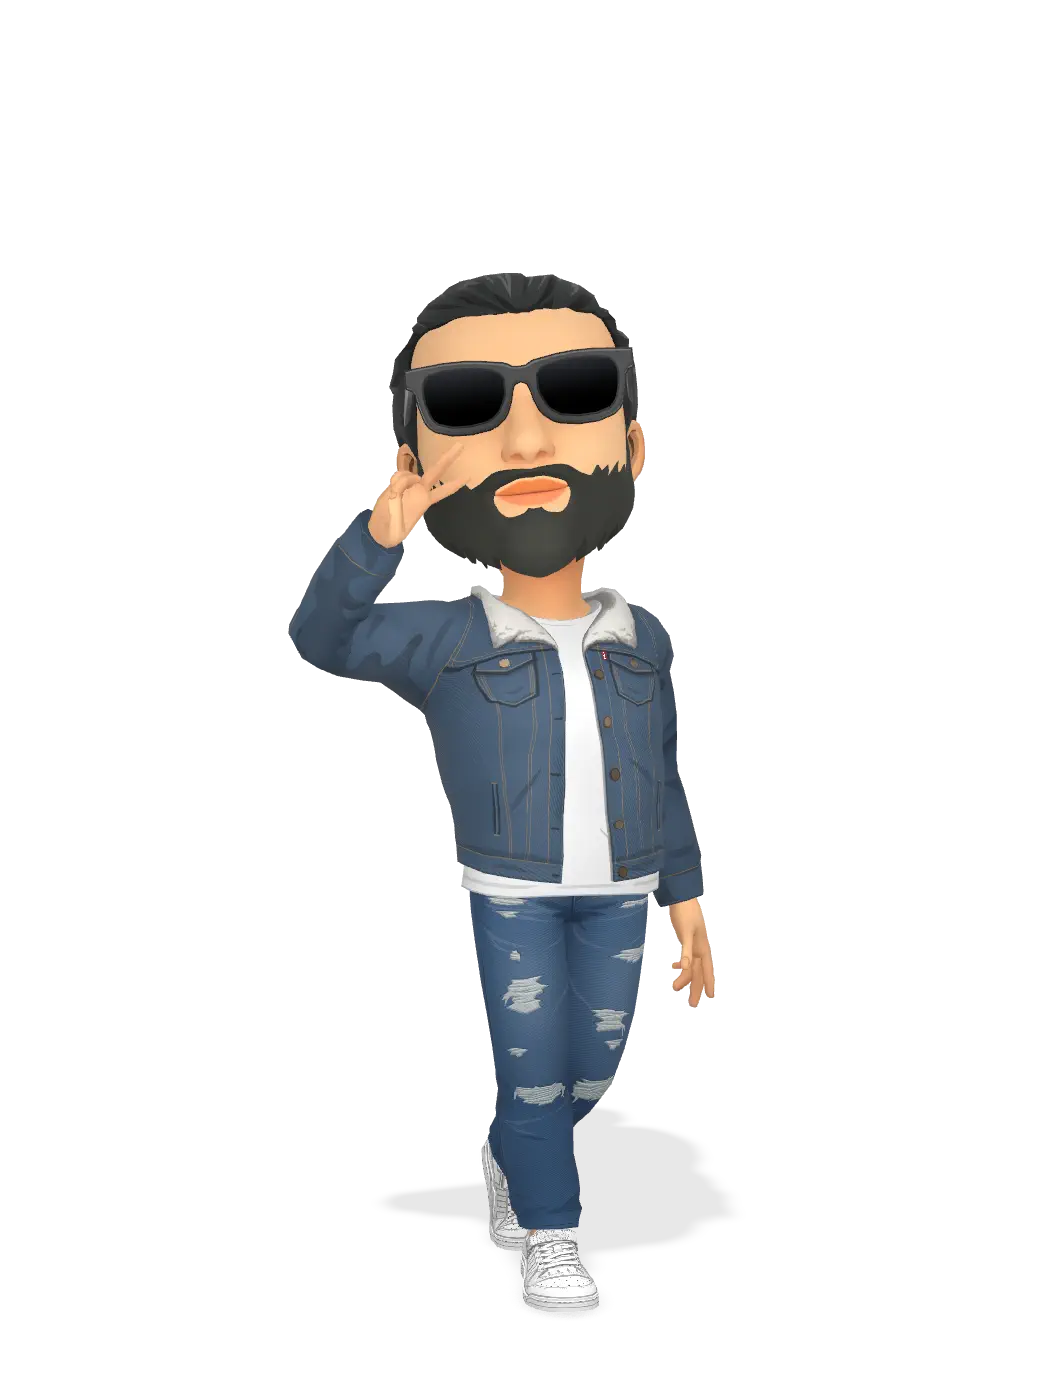 3D Bitmoji for pulkitnarwani avatar